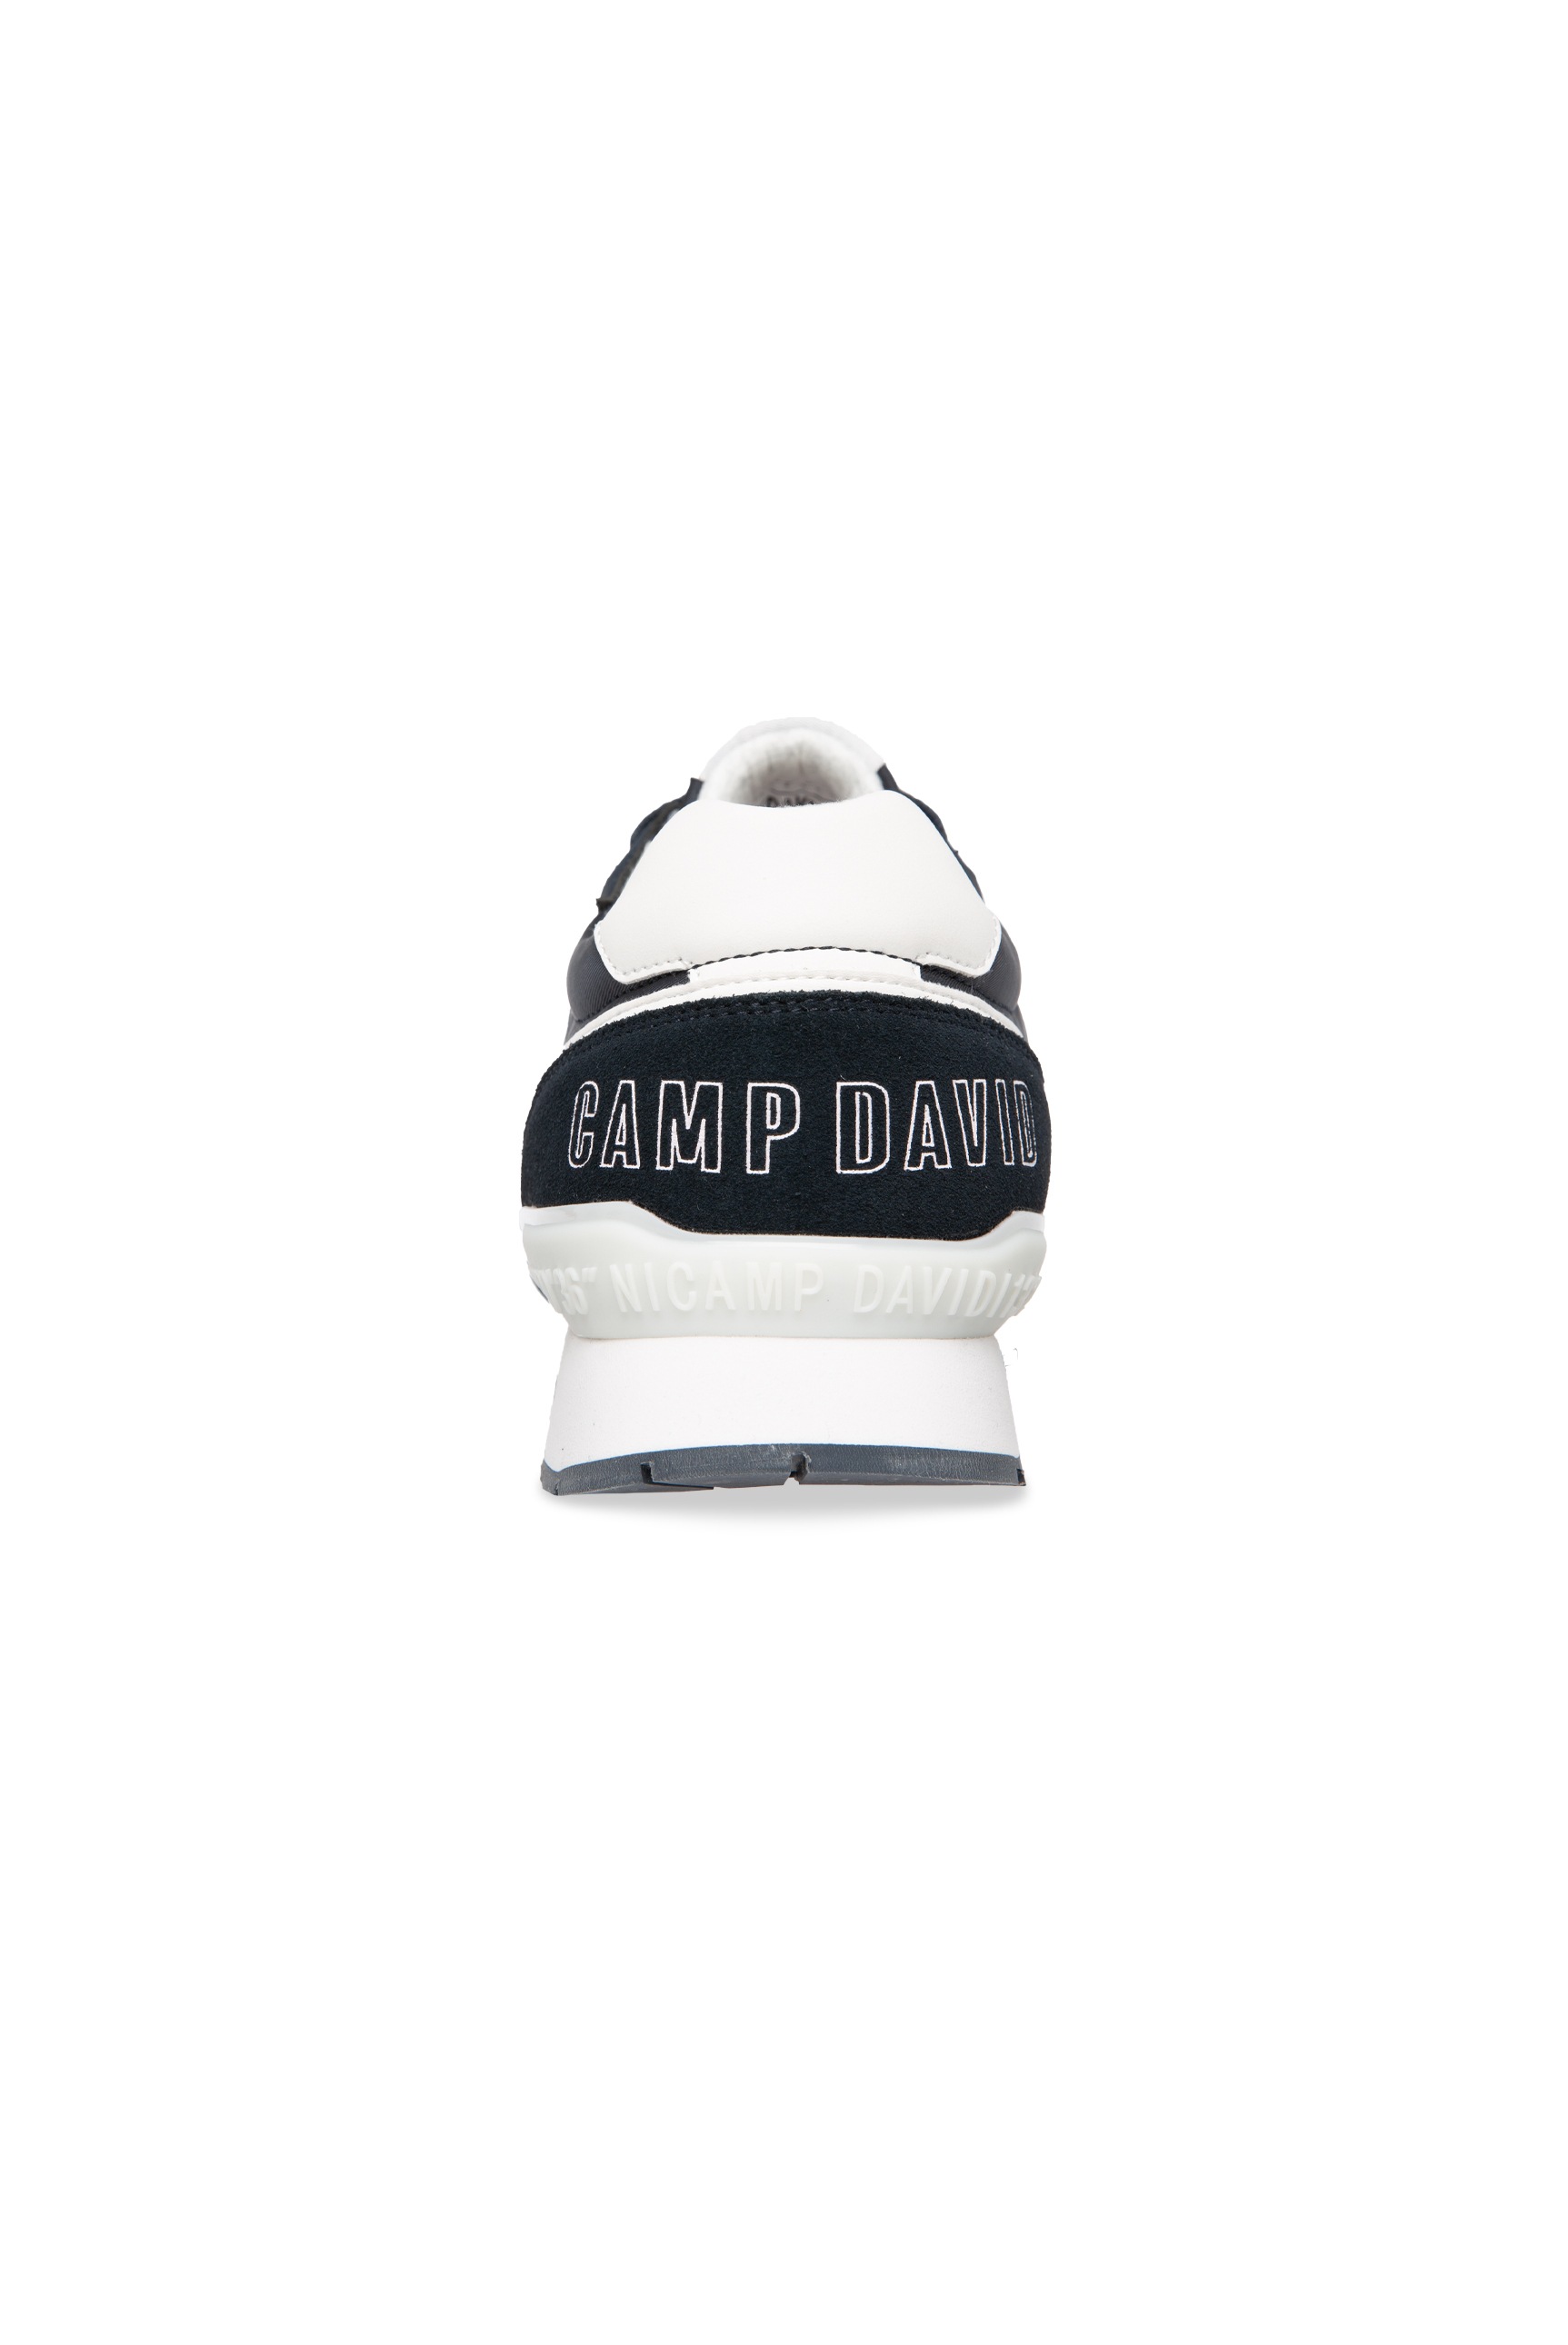 CAMP DAVID Sneaker, mit Wechselfußbett